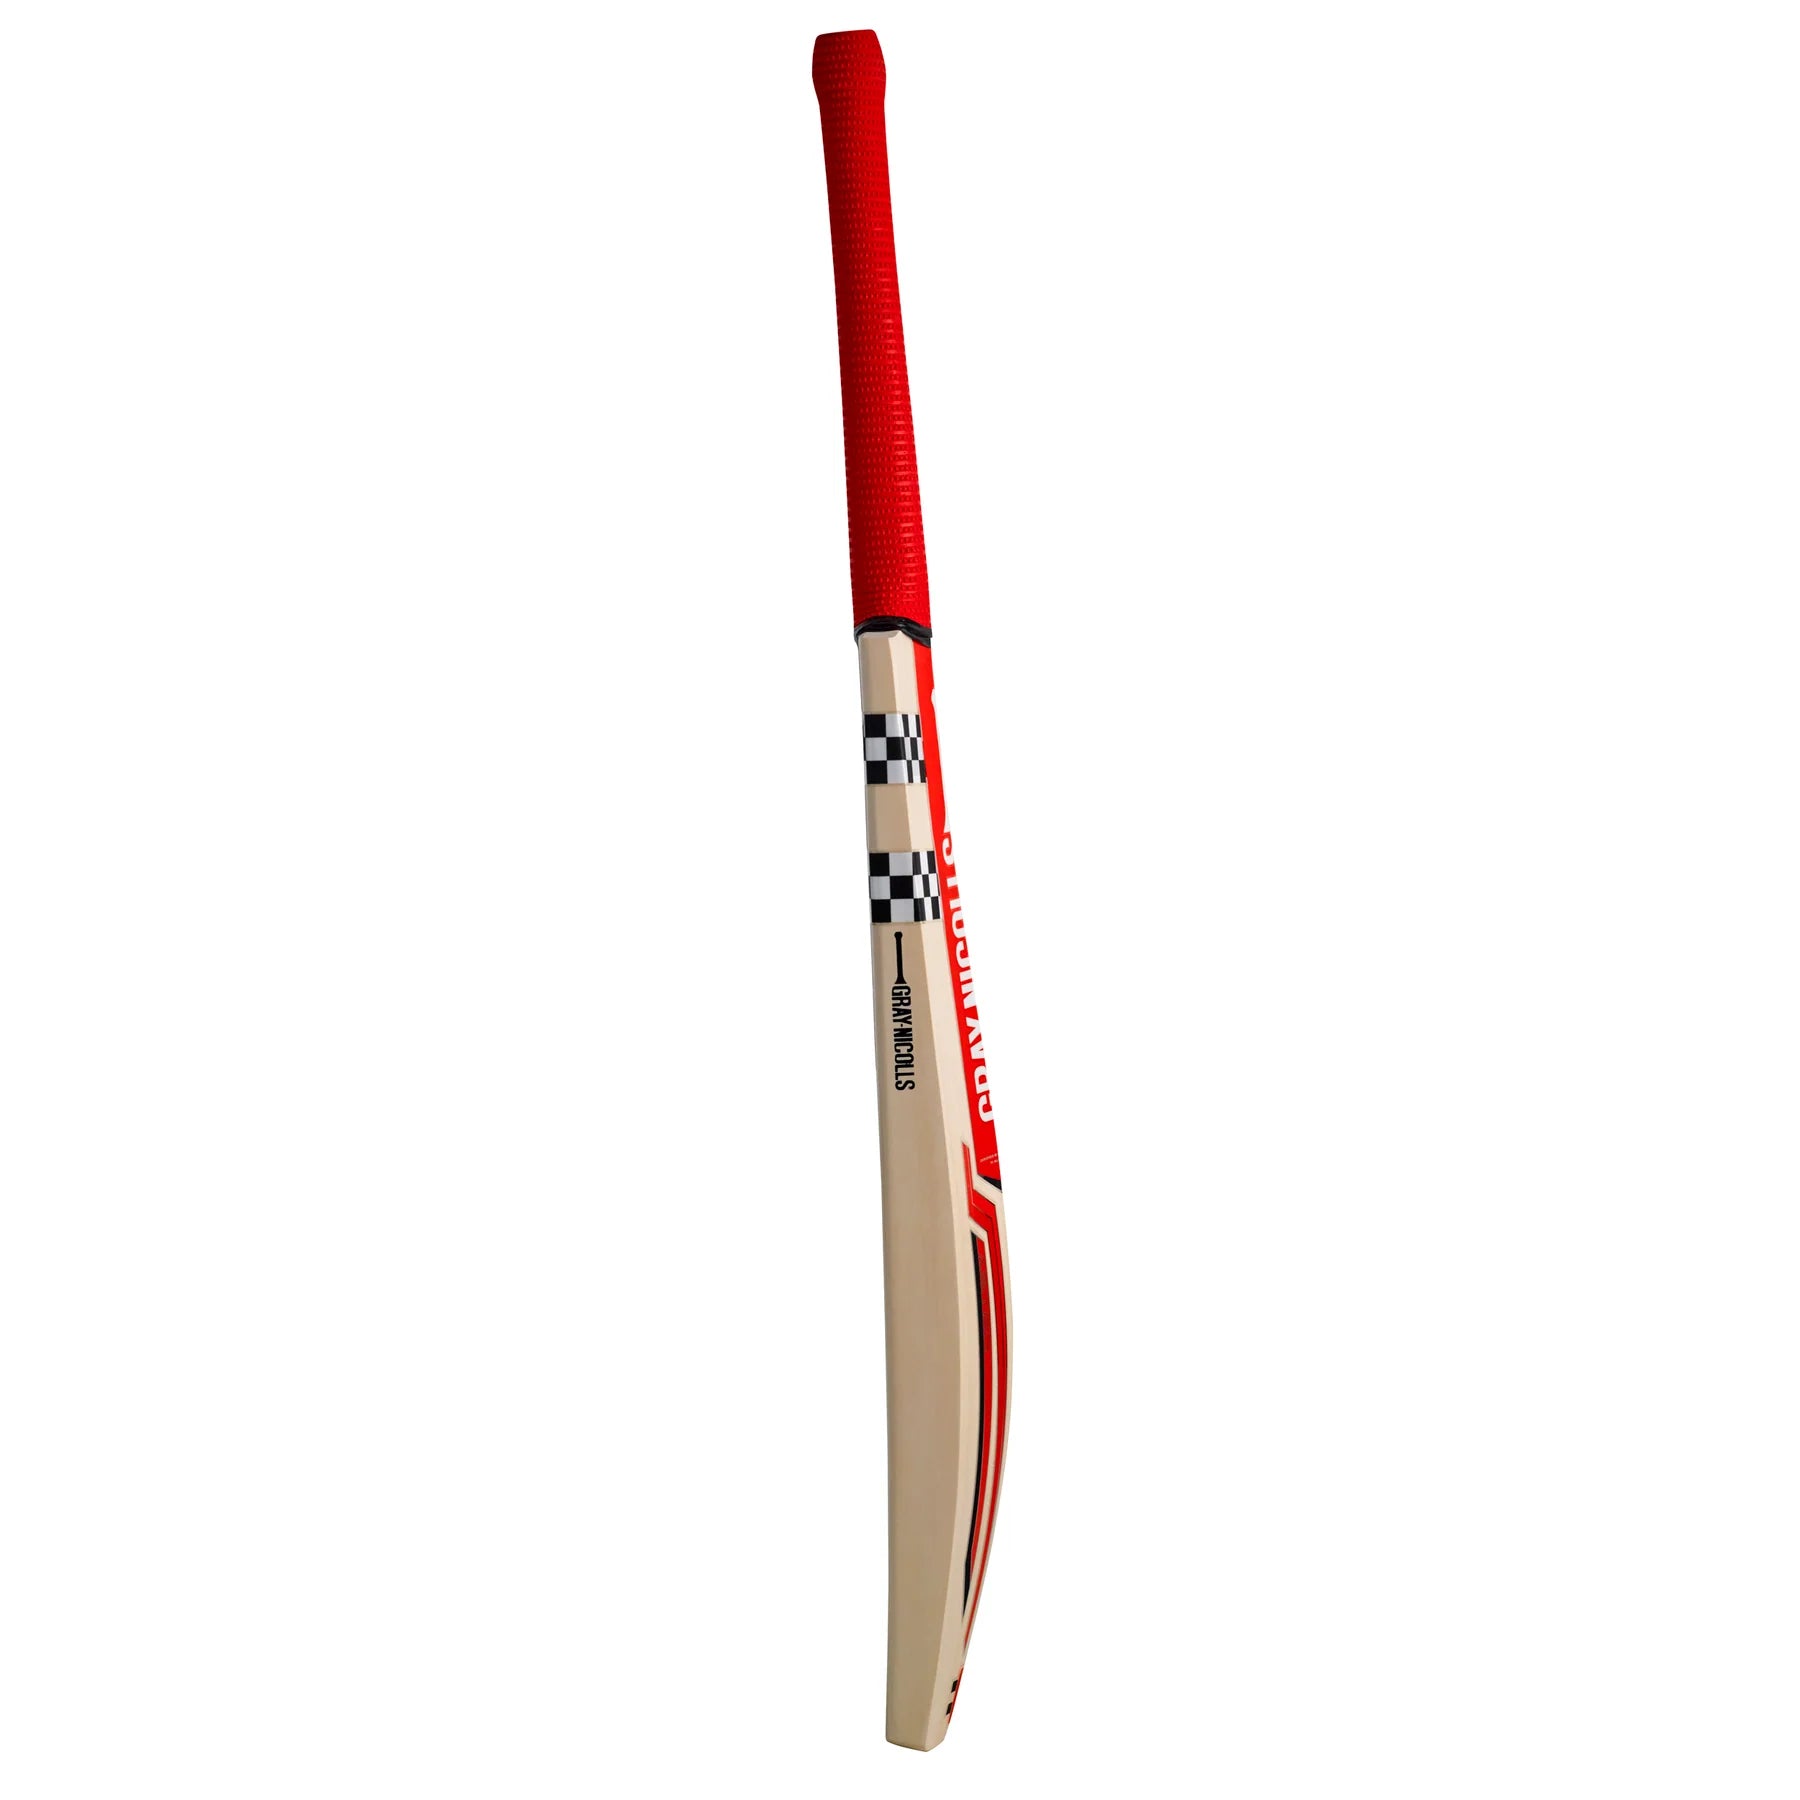 Gray-Nicolls Astro 950 English Willow Senior Cricket Bat